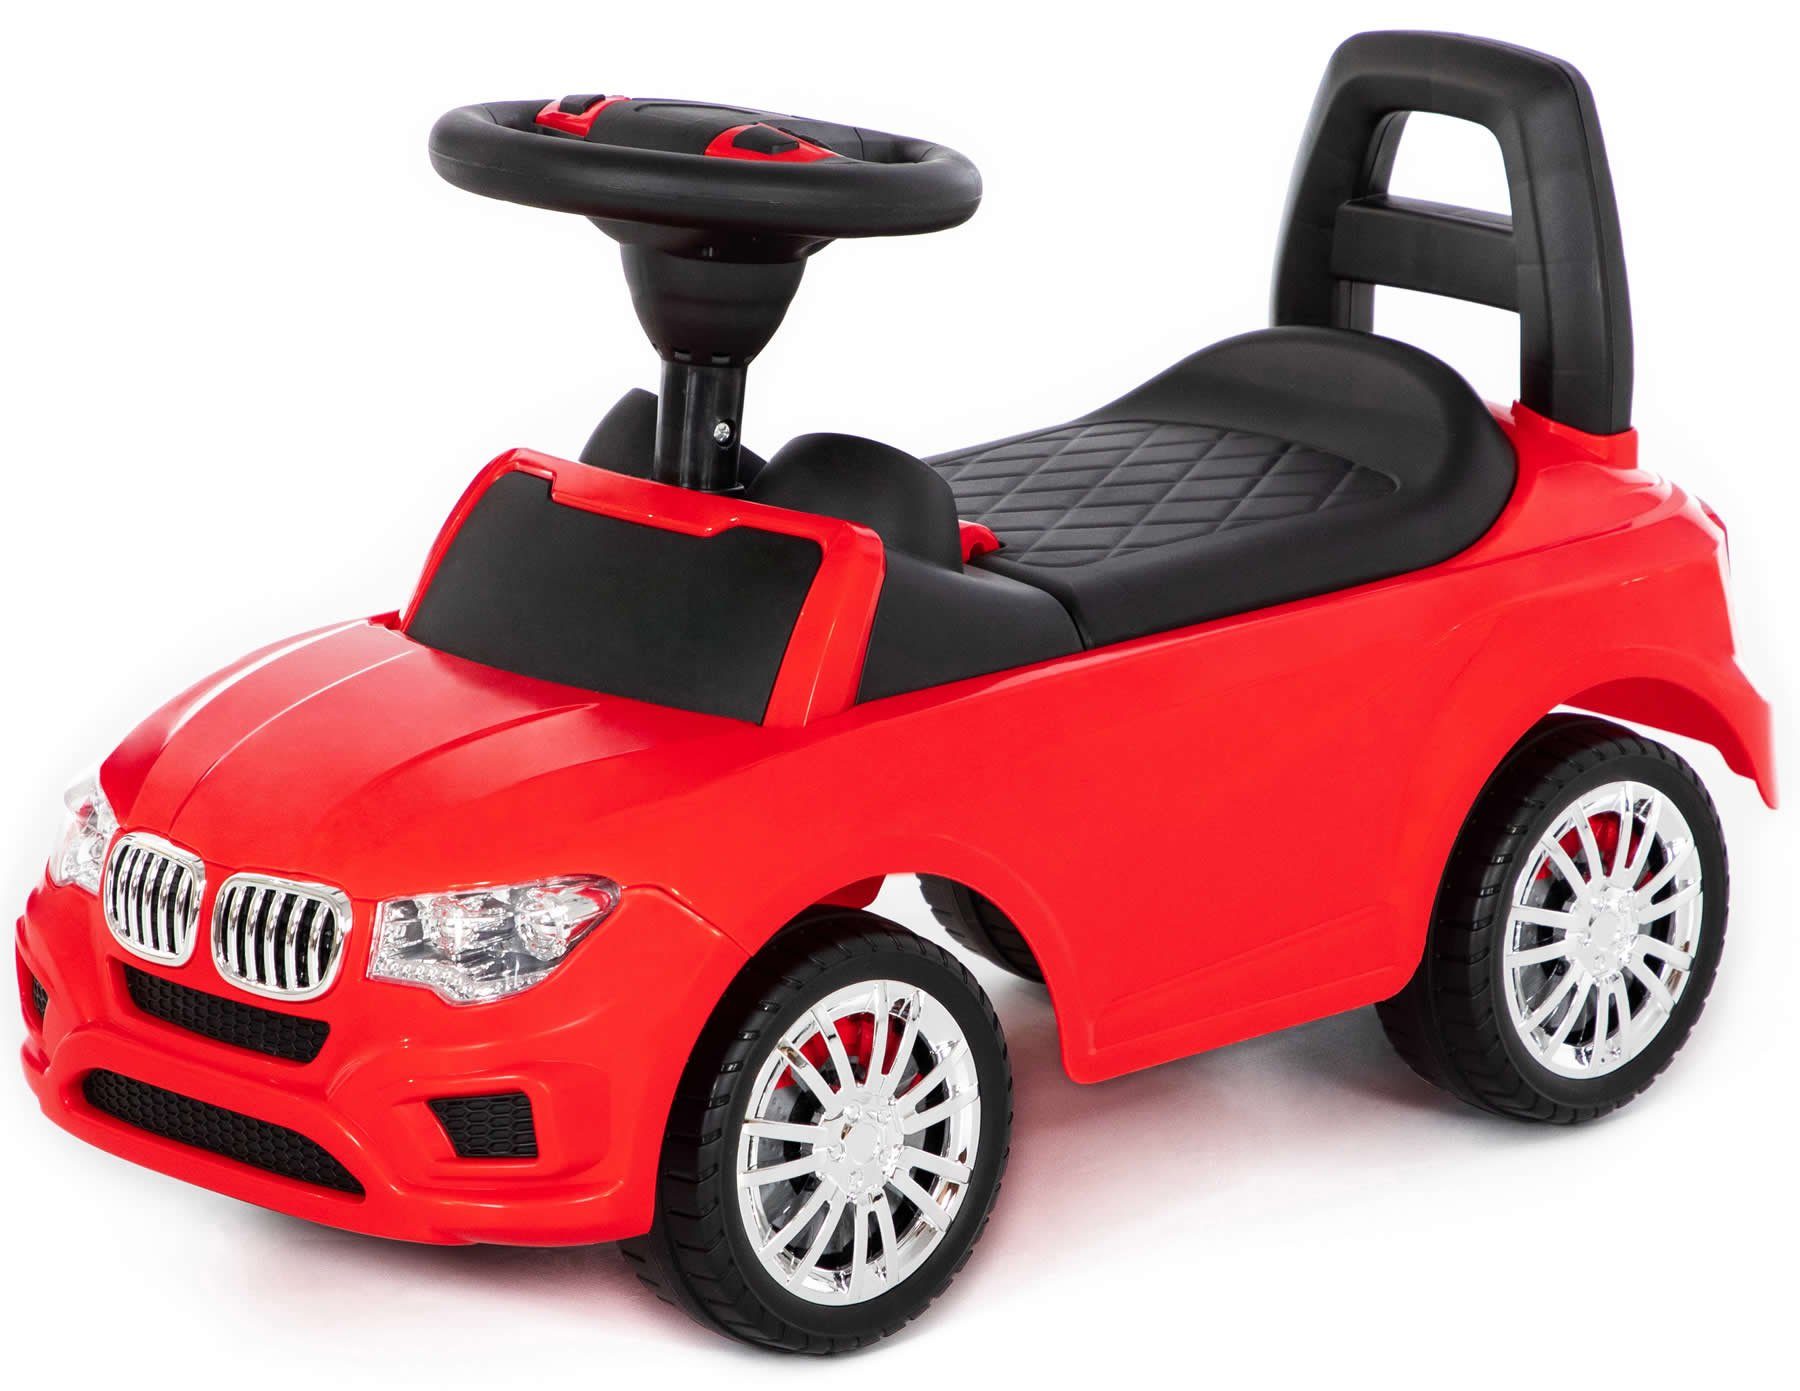 Auto Abenteuer Spielzeug Rennbahn Autos Auto Abenteuer Vorschule Kleinkind  Junge Manuell betriebenes Auto Spielset Bildung Spielzeug für